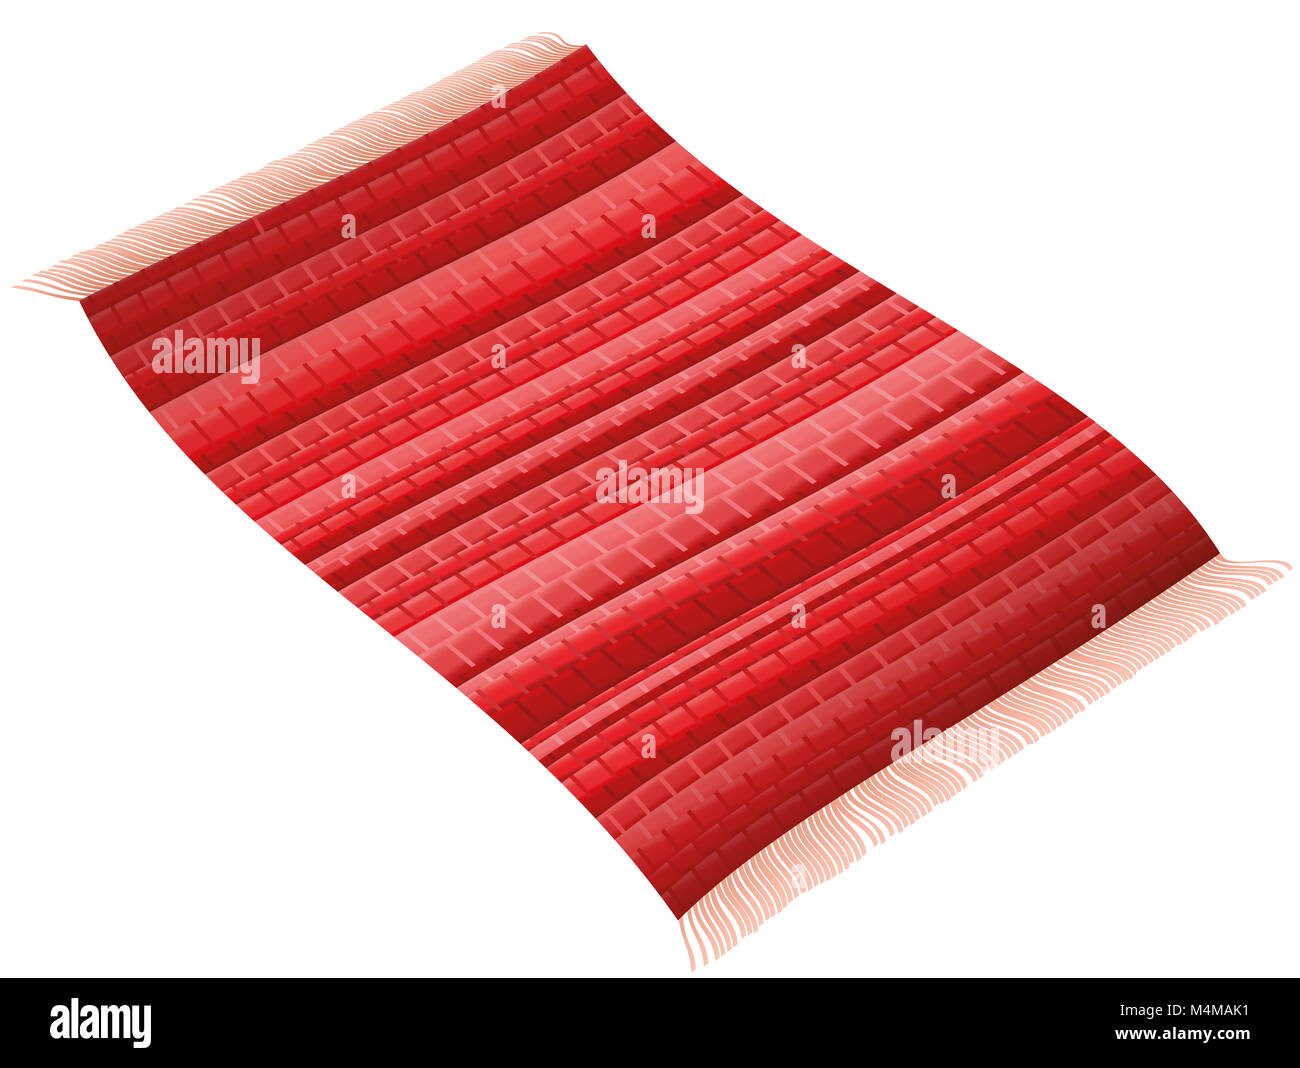 Alfombra Roja. Rag alfombra voladora como una alfombra mágica. Ilustración sobre fondo blanco. Foto de stock